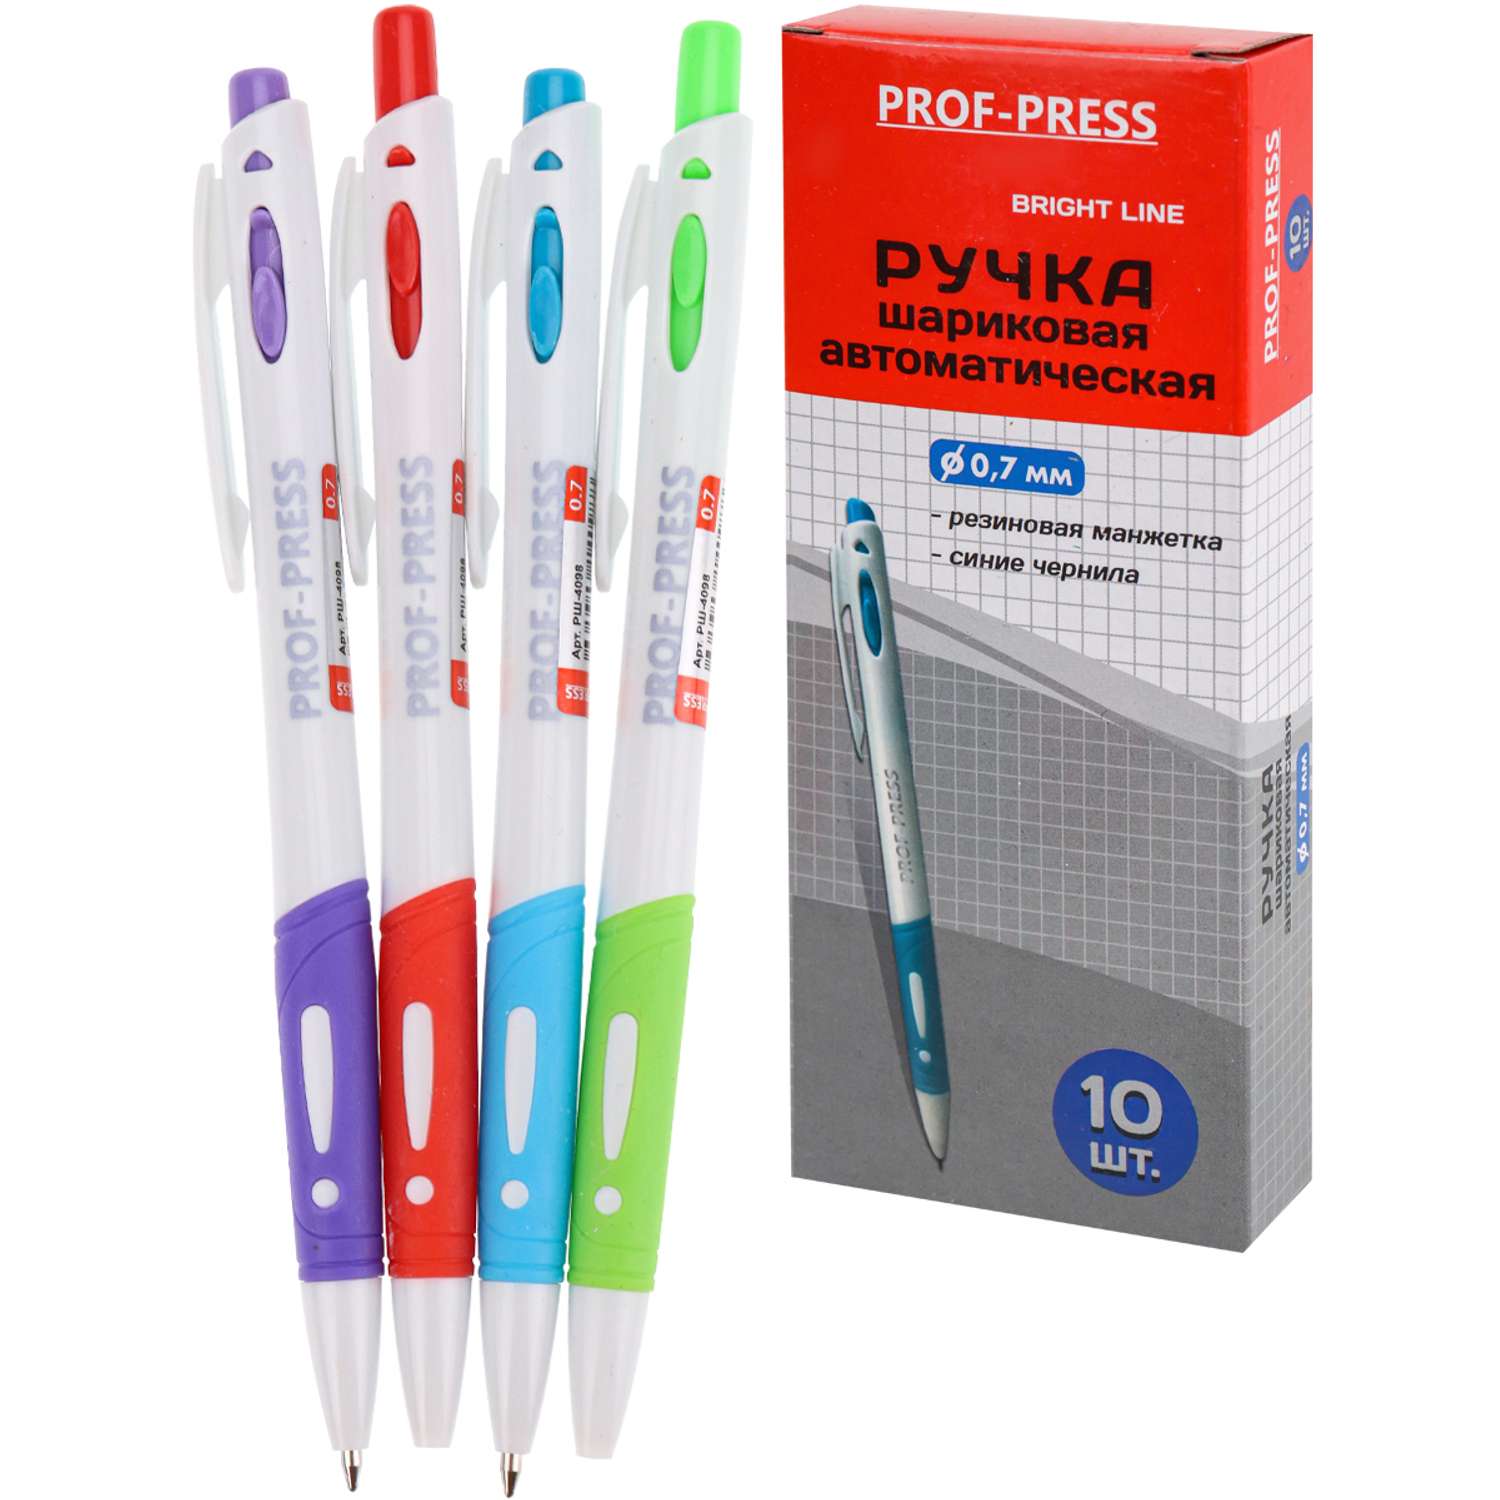 Ручка шариковая Prof-Press синяя bright line автоматическая с рез манжеткой 10шт - фото 1